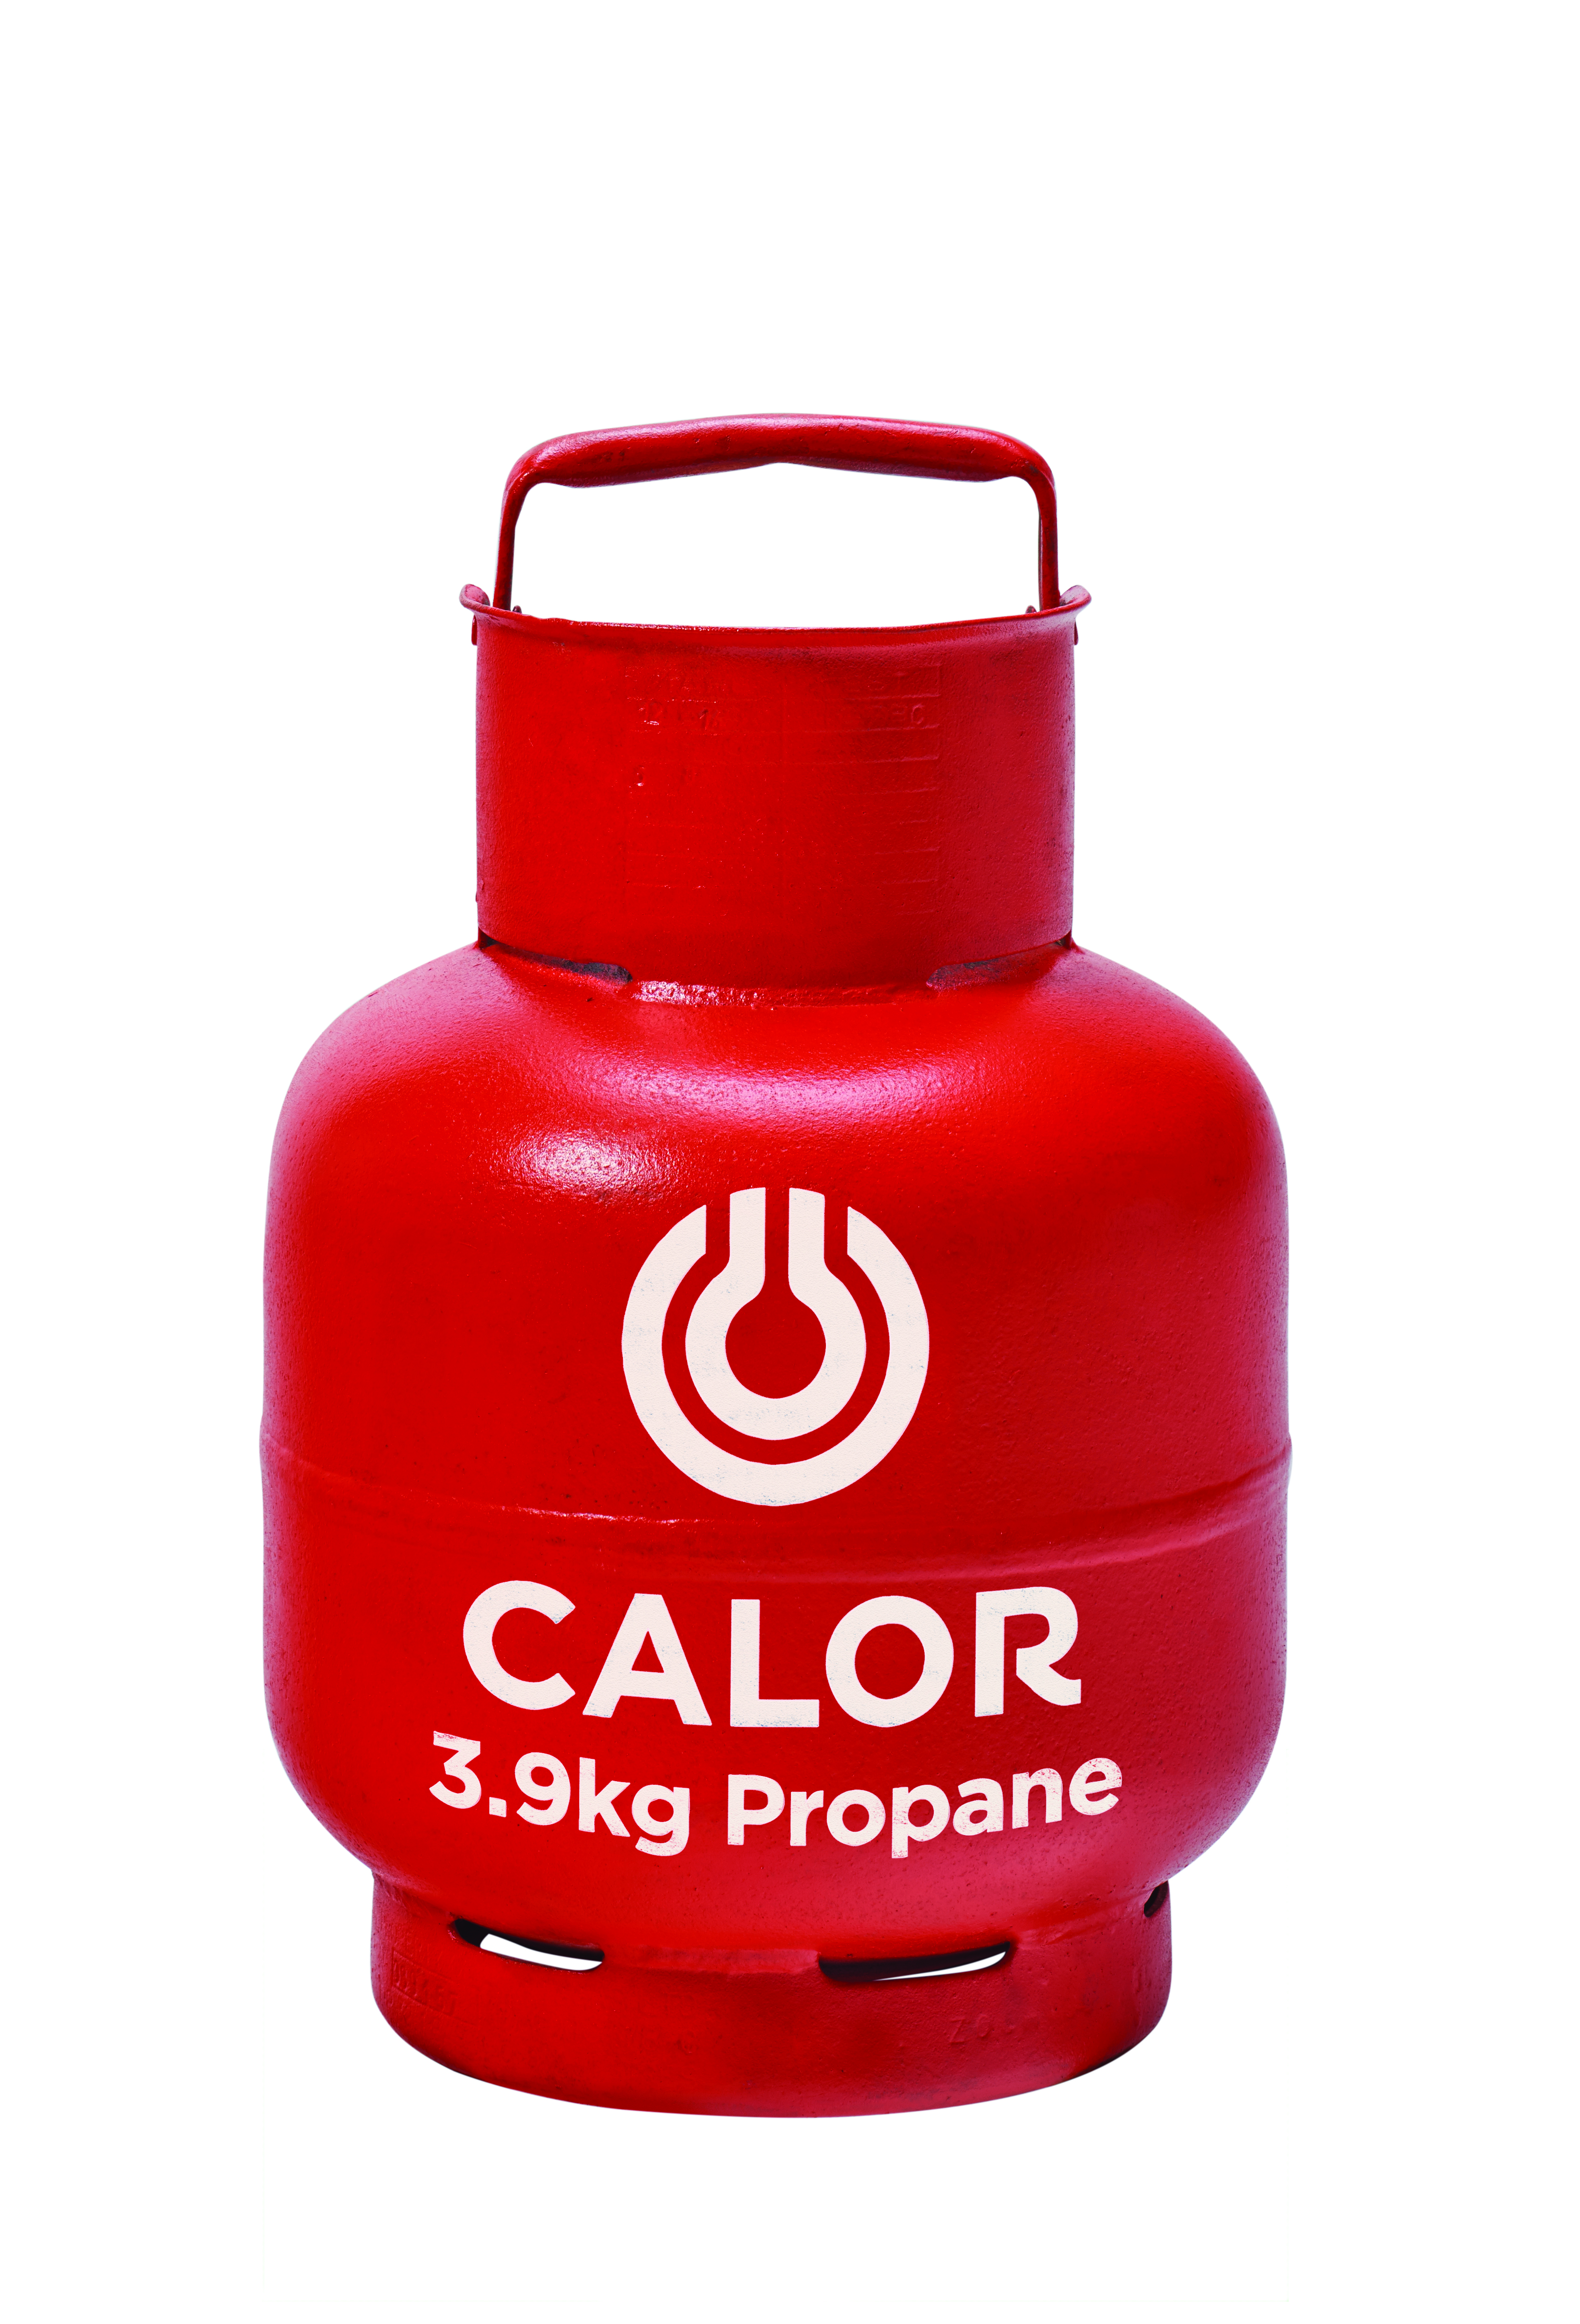 3.9kg Propane Calor Gas Bottles Petersfield